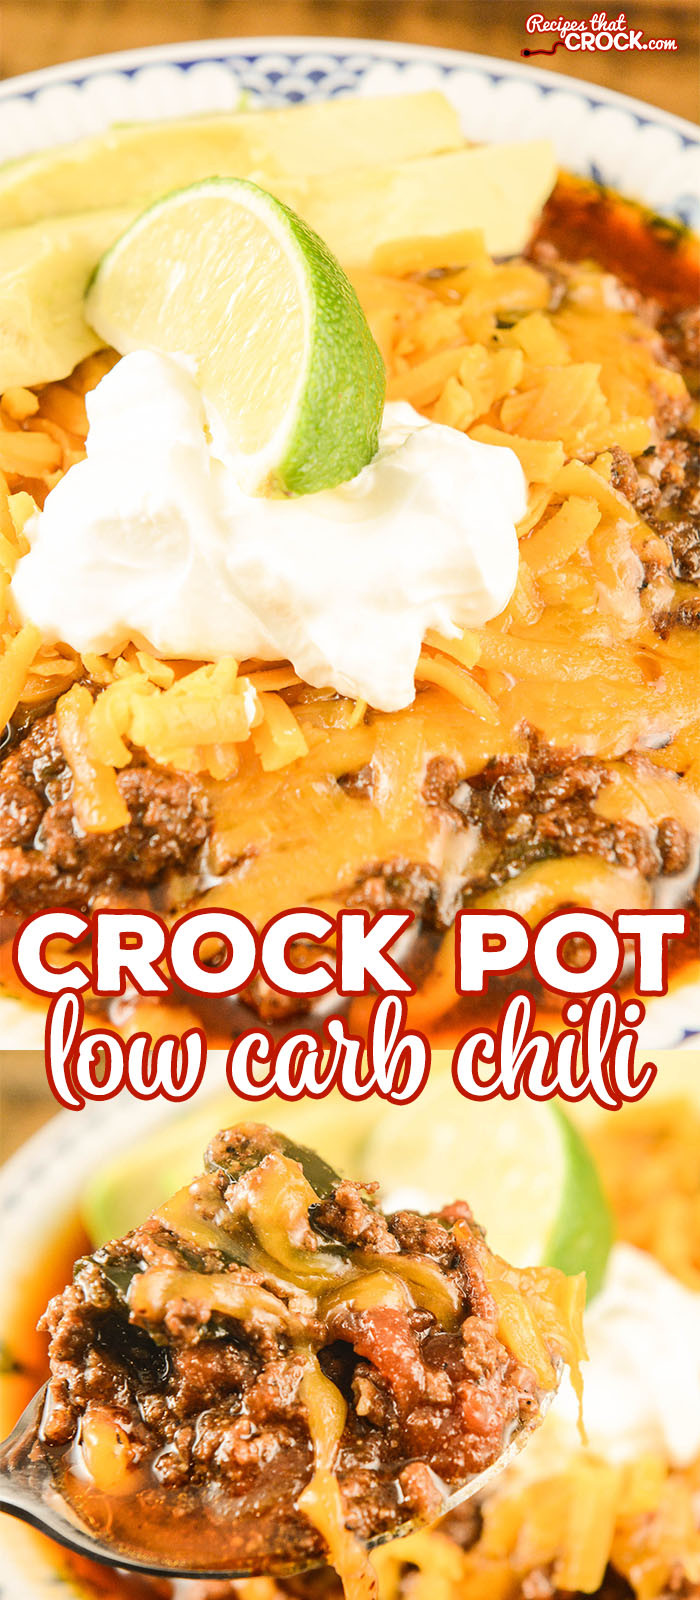 Low Carb Crock Pot Recipes
 Crock Pot Low Carb Chili Recipes That Crock